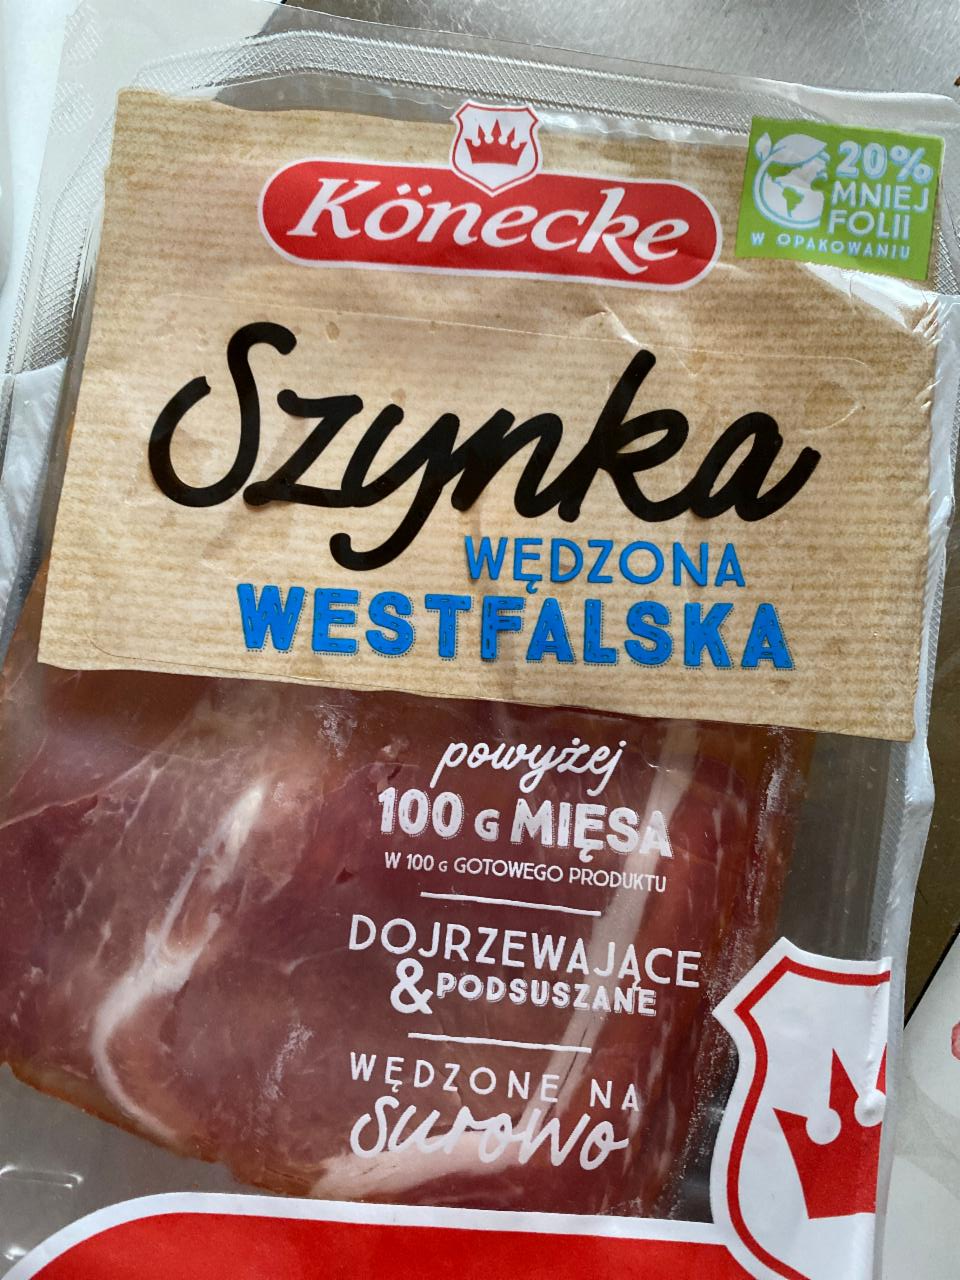 Fotografie - Szynka Wędzona westfalska Könecke